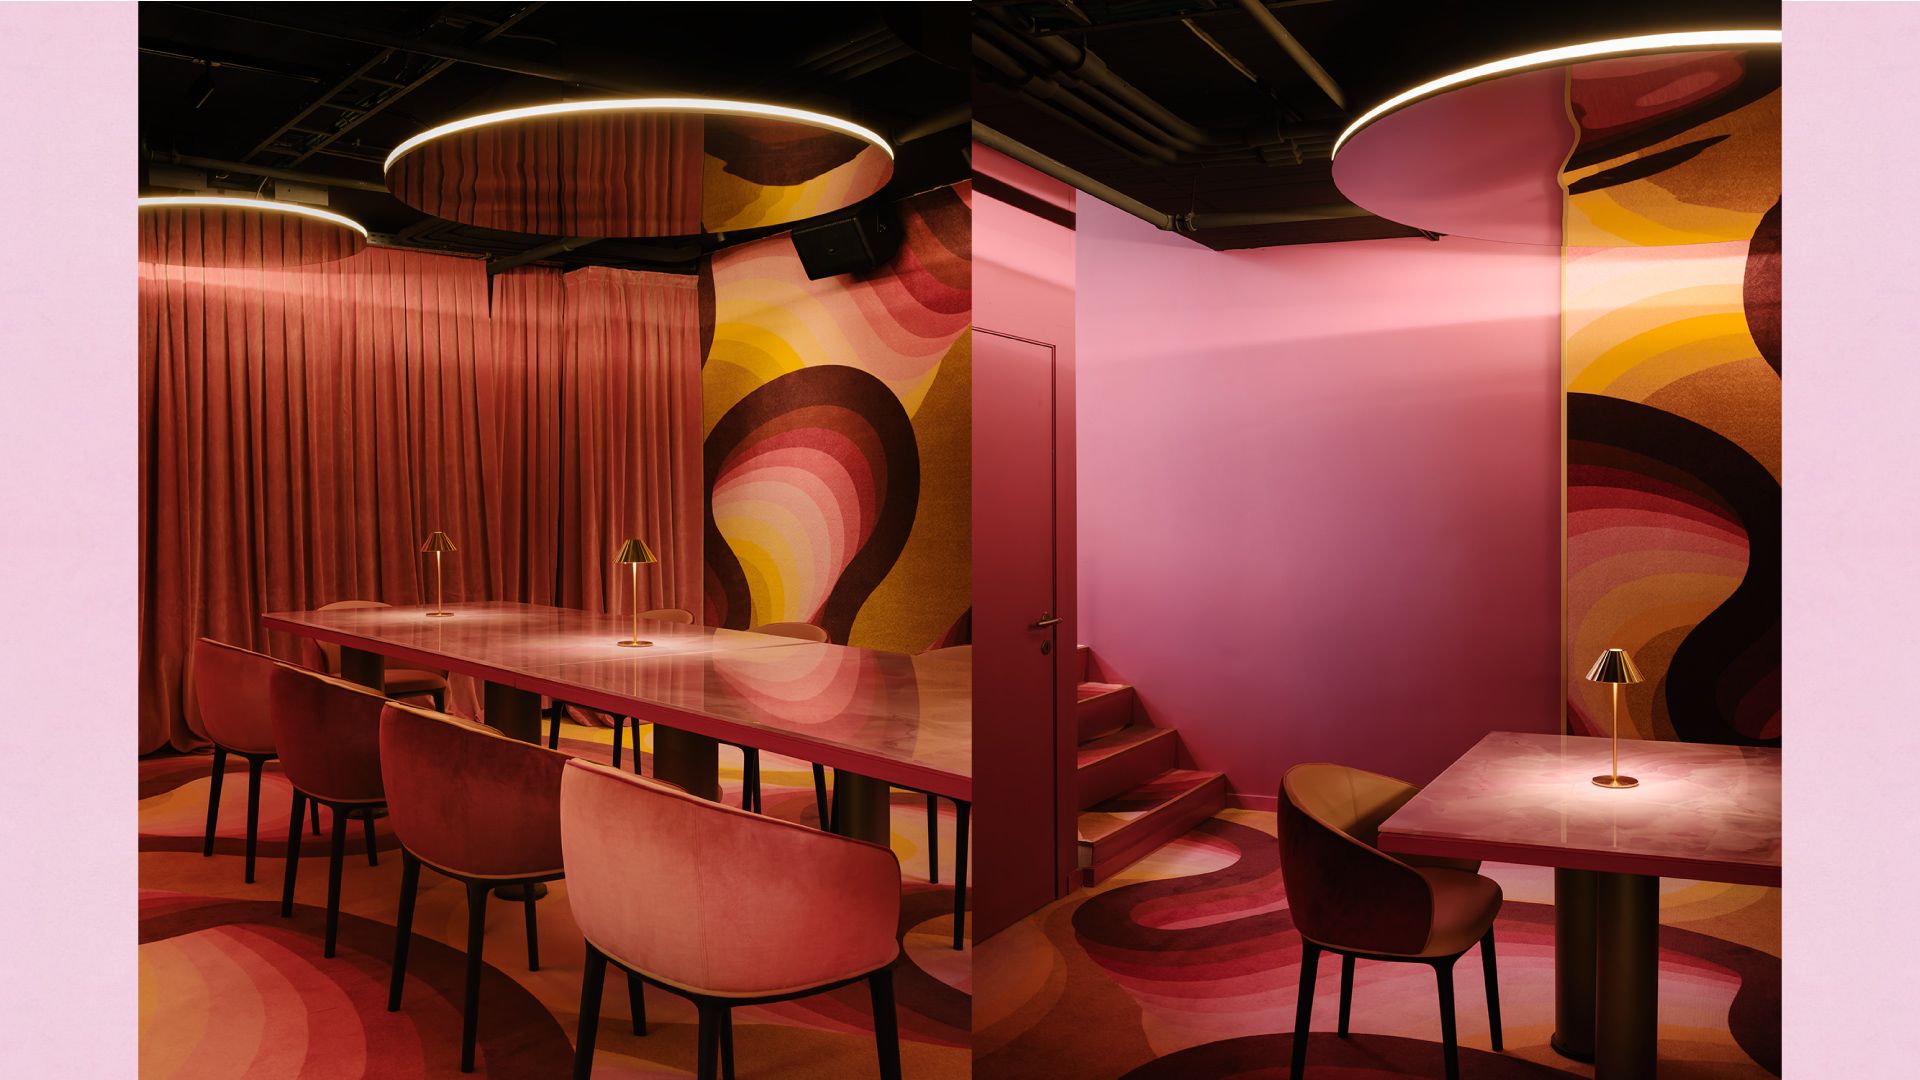 Fornitura di sedute (modello Twin Chair e Masa Lounge) per l'arredamento del Bistrò "Miss Rose", Bruxelles - Belgio. Studio di progettazione SUPERSTUDIO 21 - Candidato per il premio "Restaurant & Bar Design Awards"